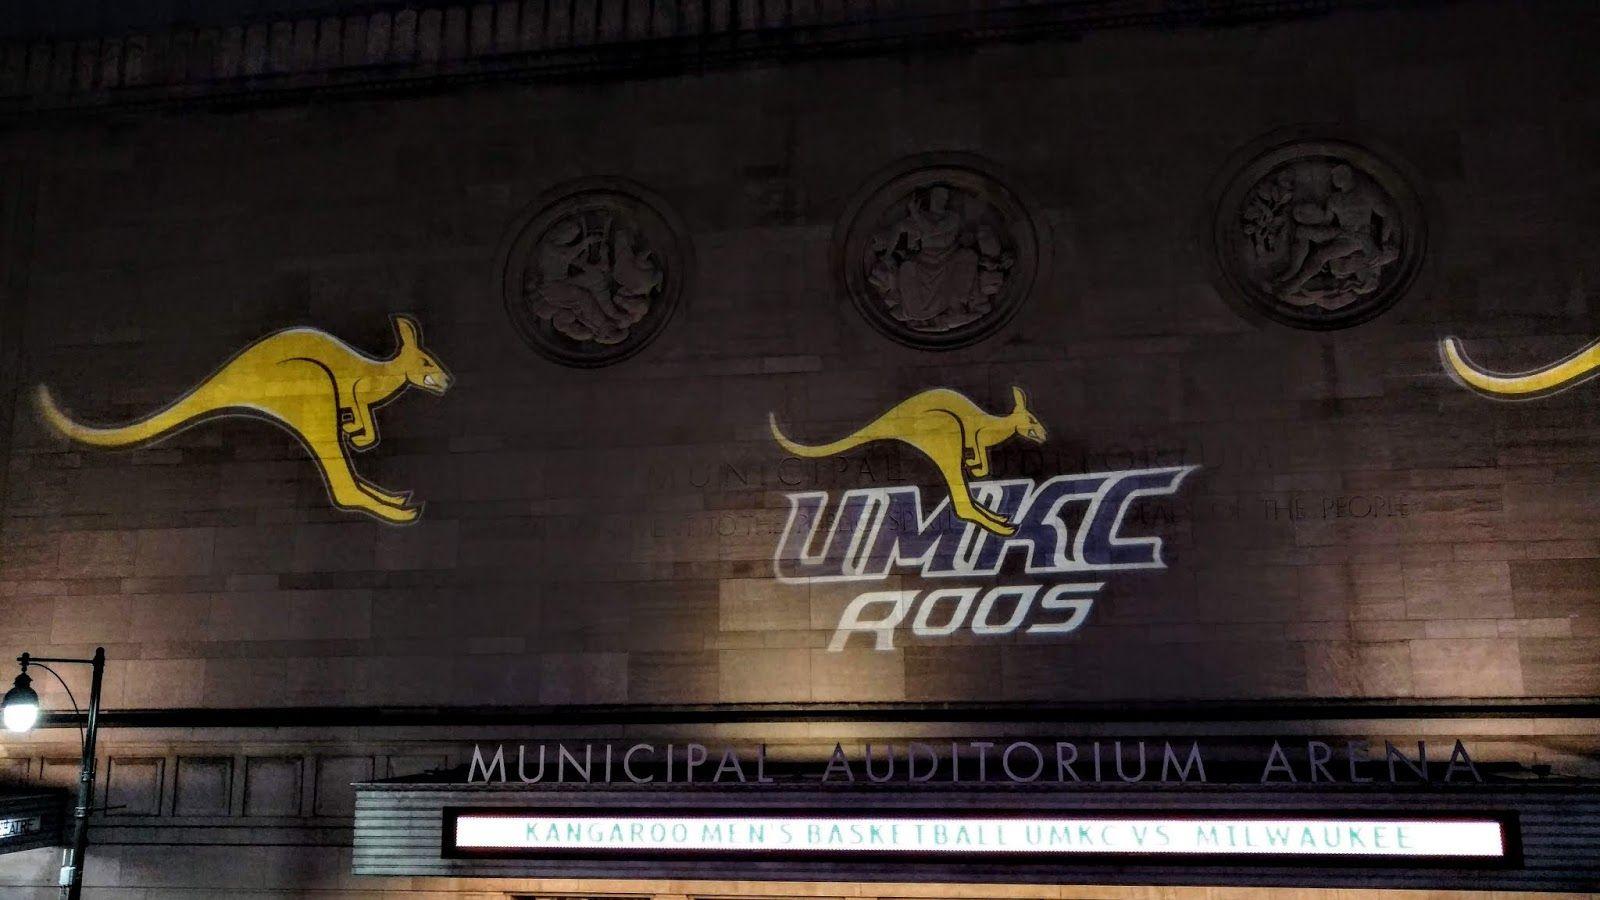 Kangaroos Basketball Logo - Sports Road Trips: UW Milwaukee Panthers 69 At UMKC Kangaroos 66